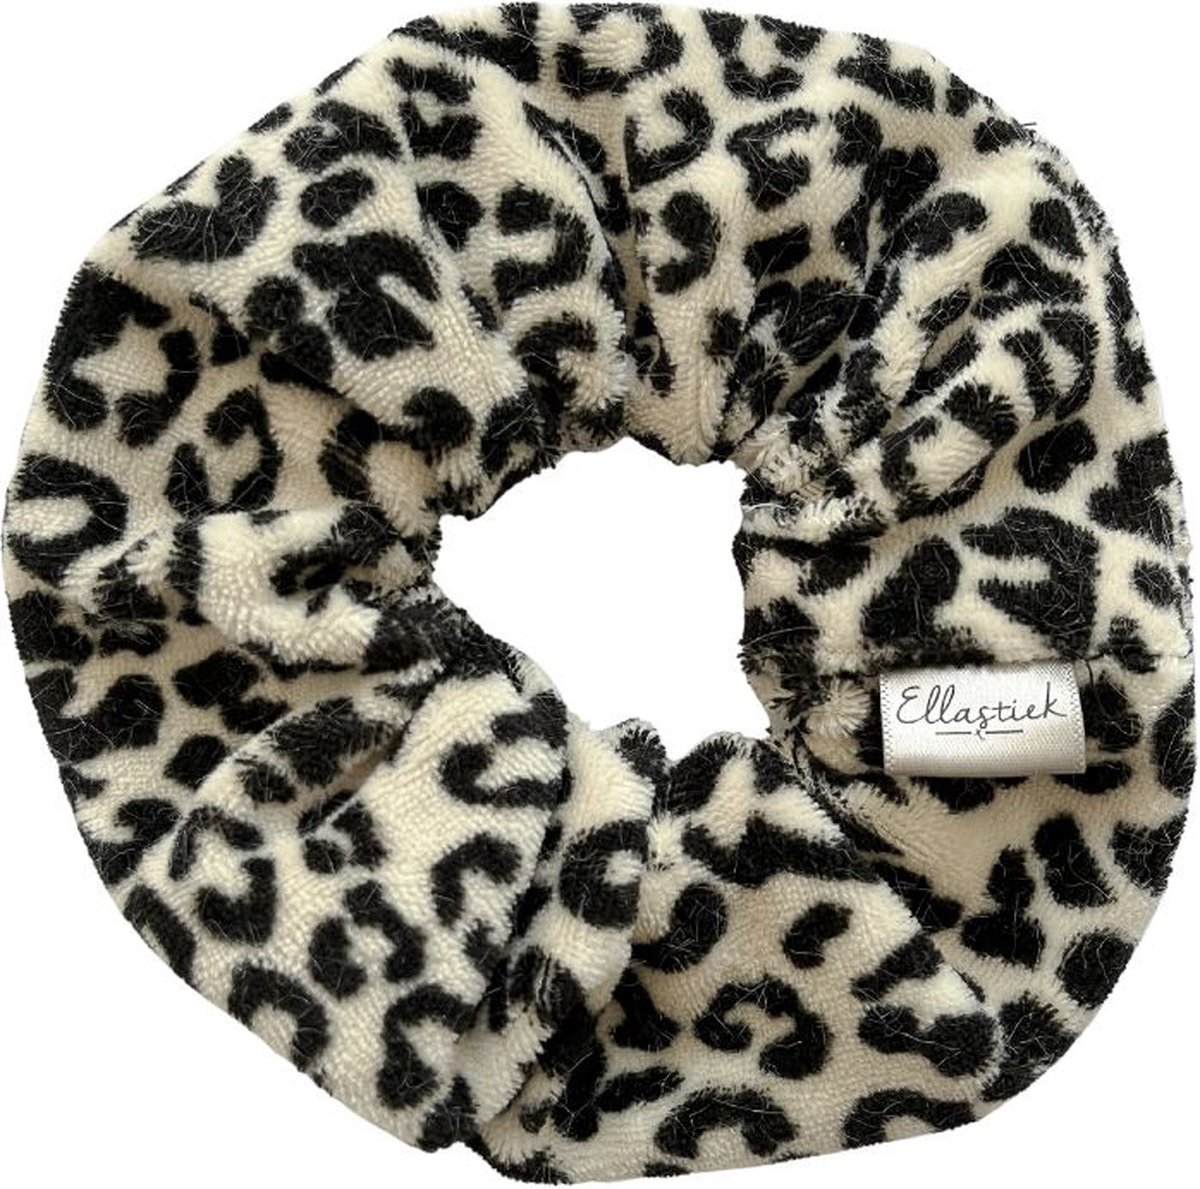 Ellastiek scrunchie leopard print - haarelastiekjes - haar accessoire - luxe uitstraling en kwaliteit- Handmade in Amsterdam